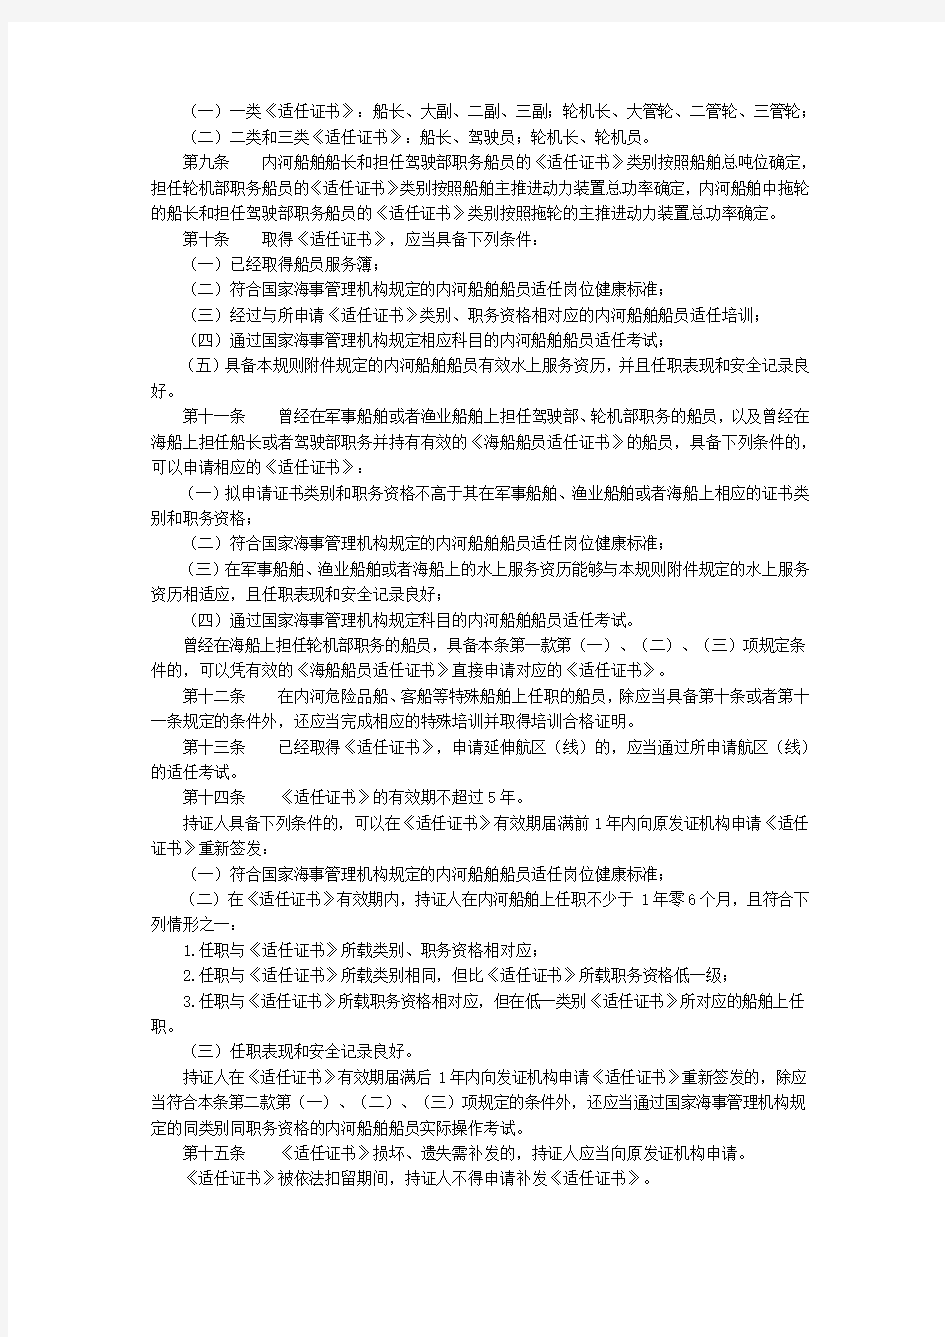 中华人民共和国内河船舶船员适任考试和发证规则(交通运输部令2010年第1号)